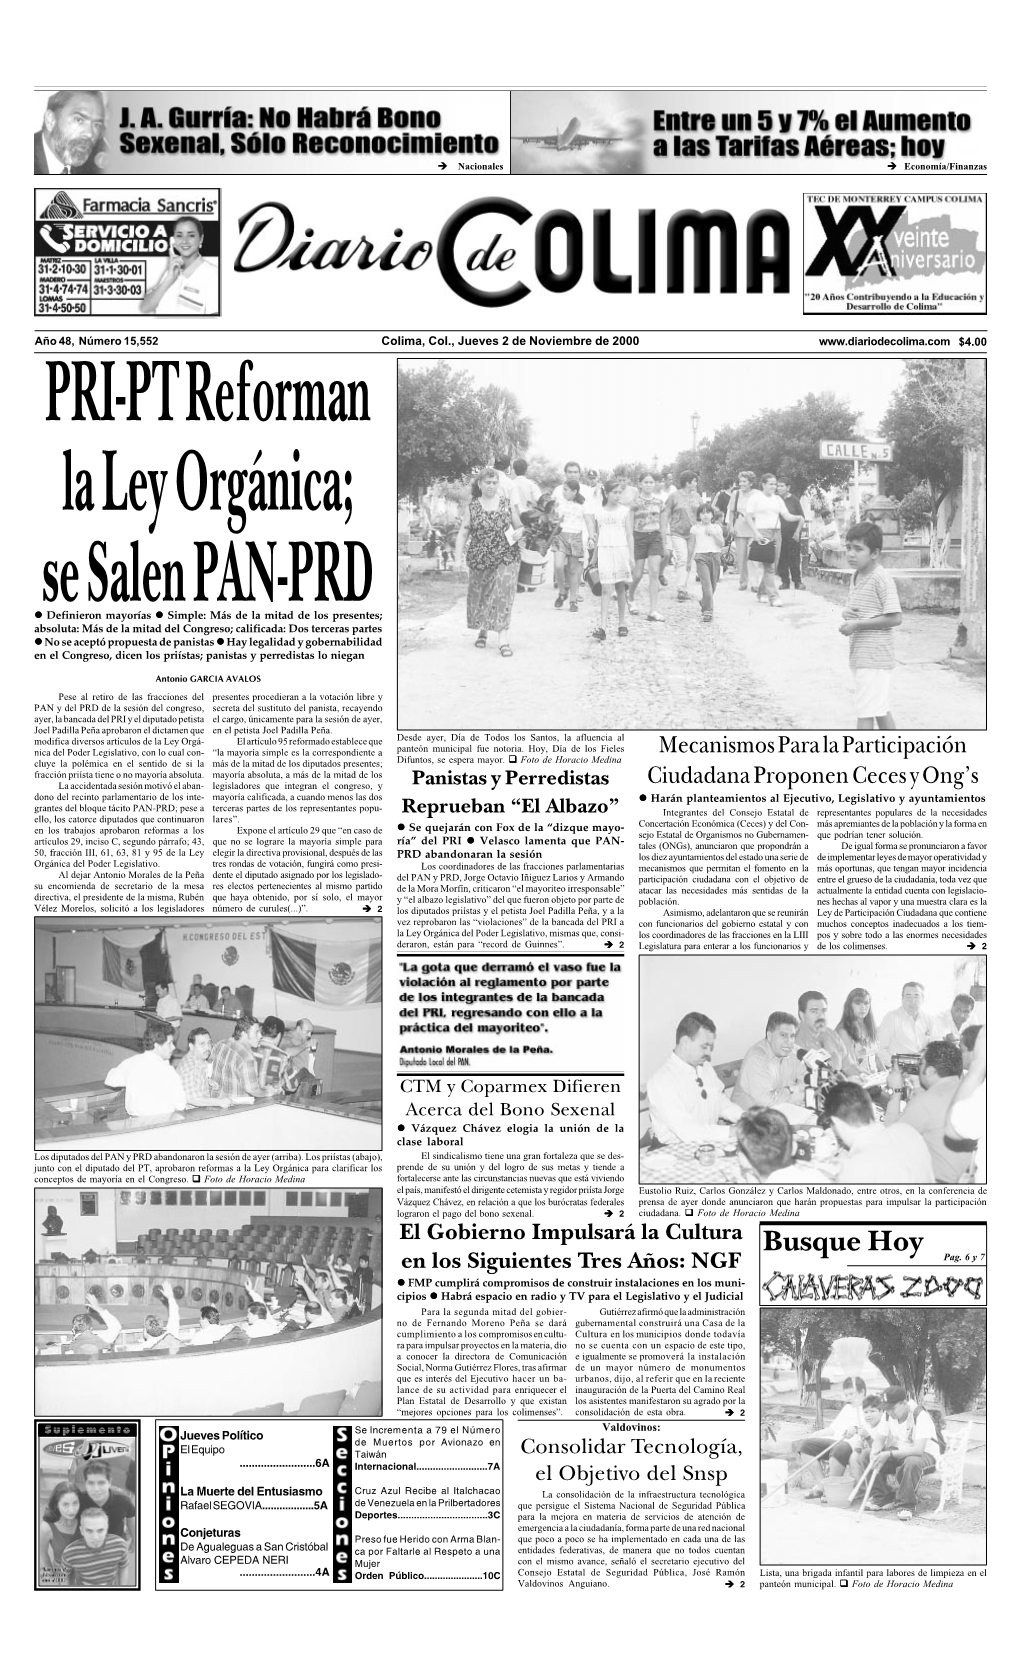 PRI-PT Reforman La Ley Orgánica; Se Salen PAN-PRD